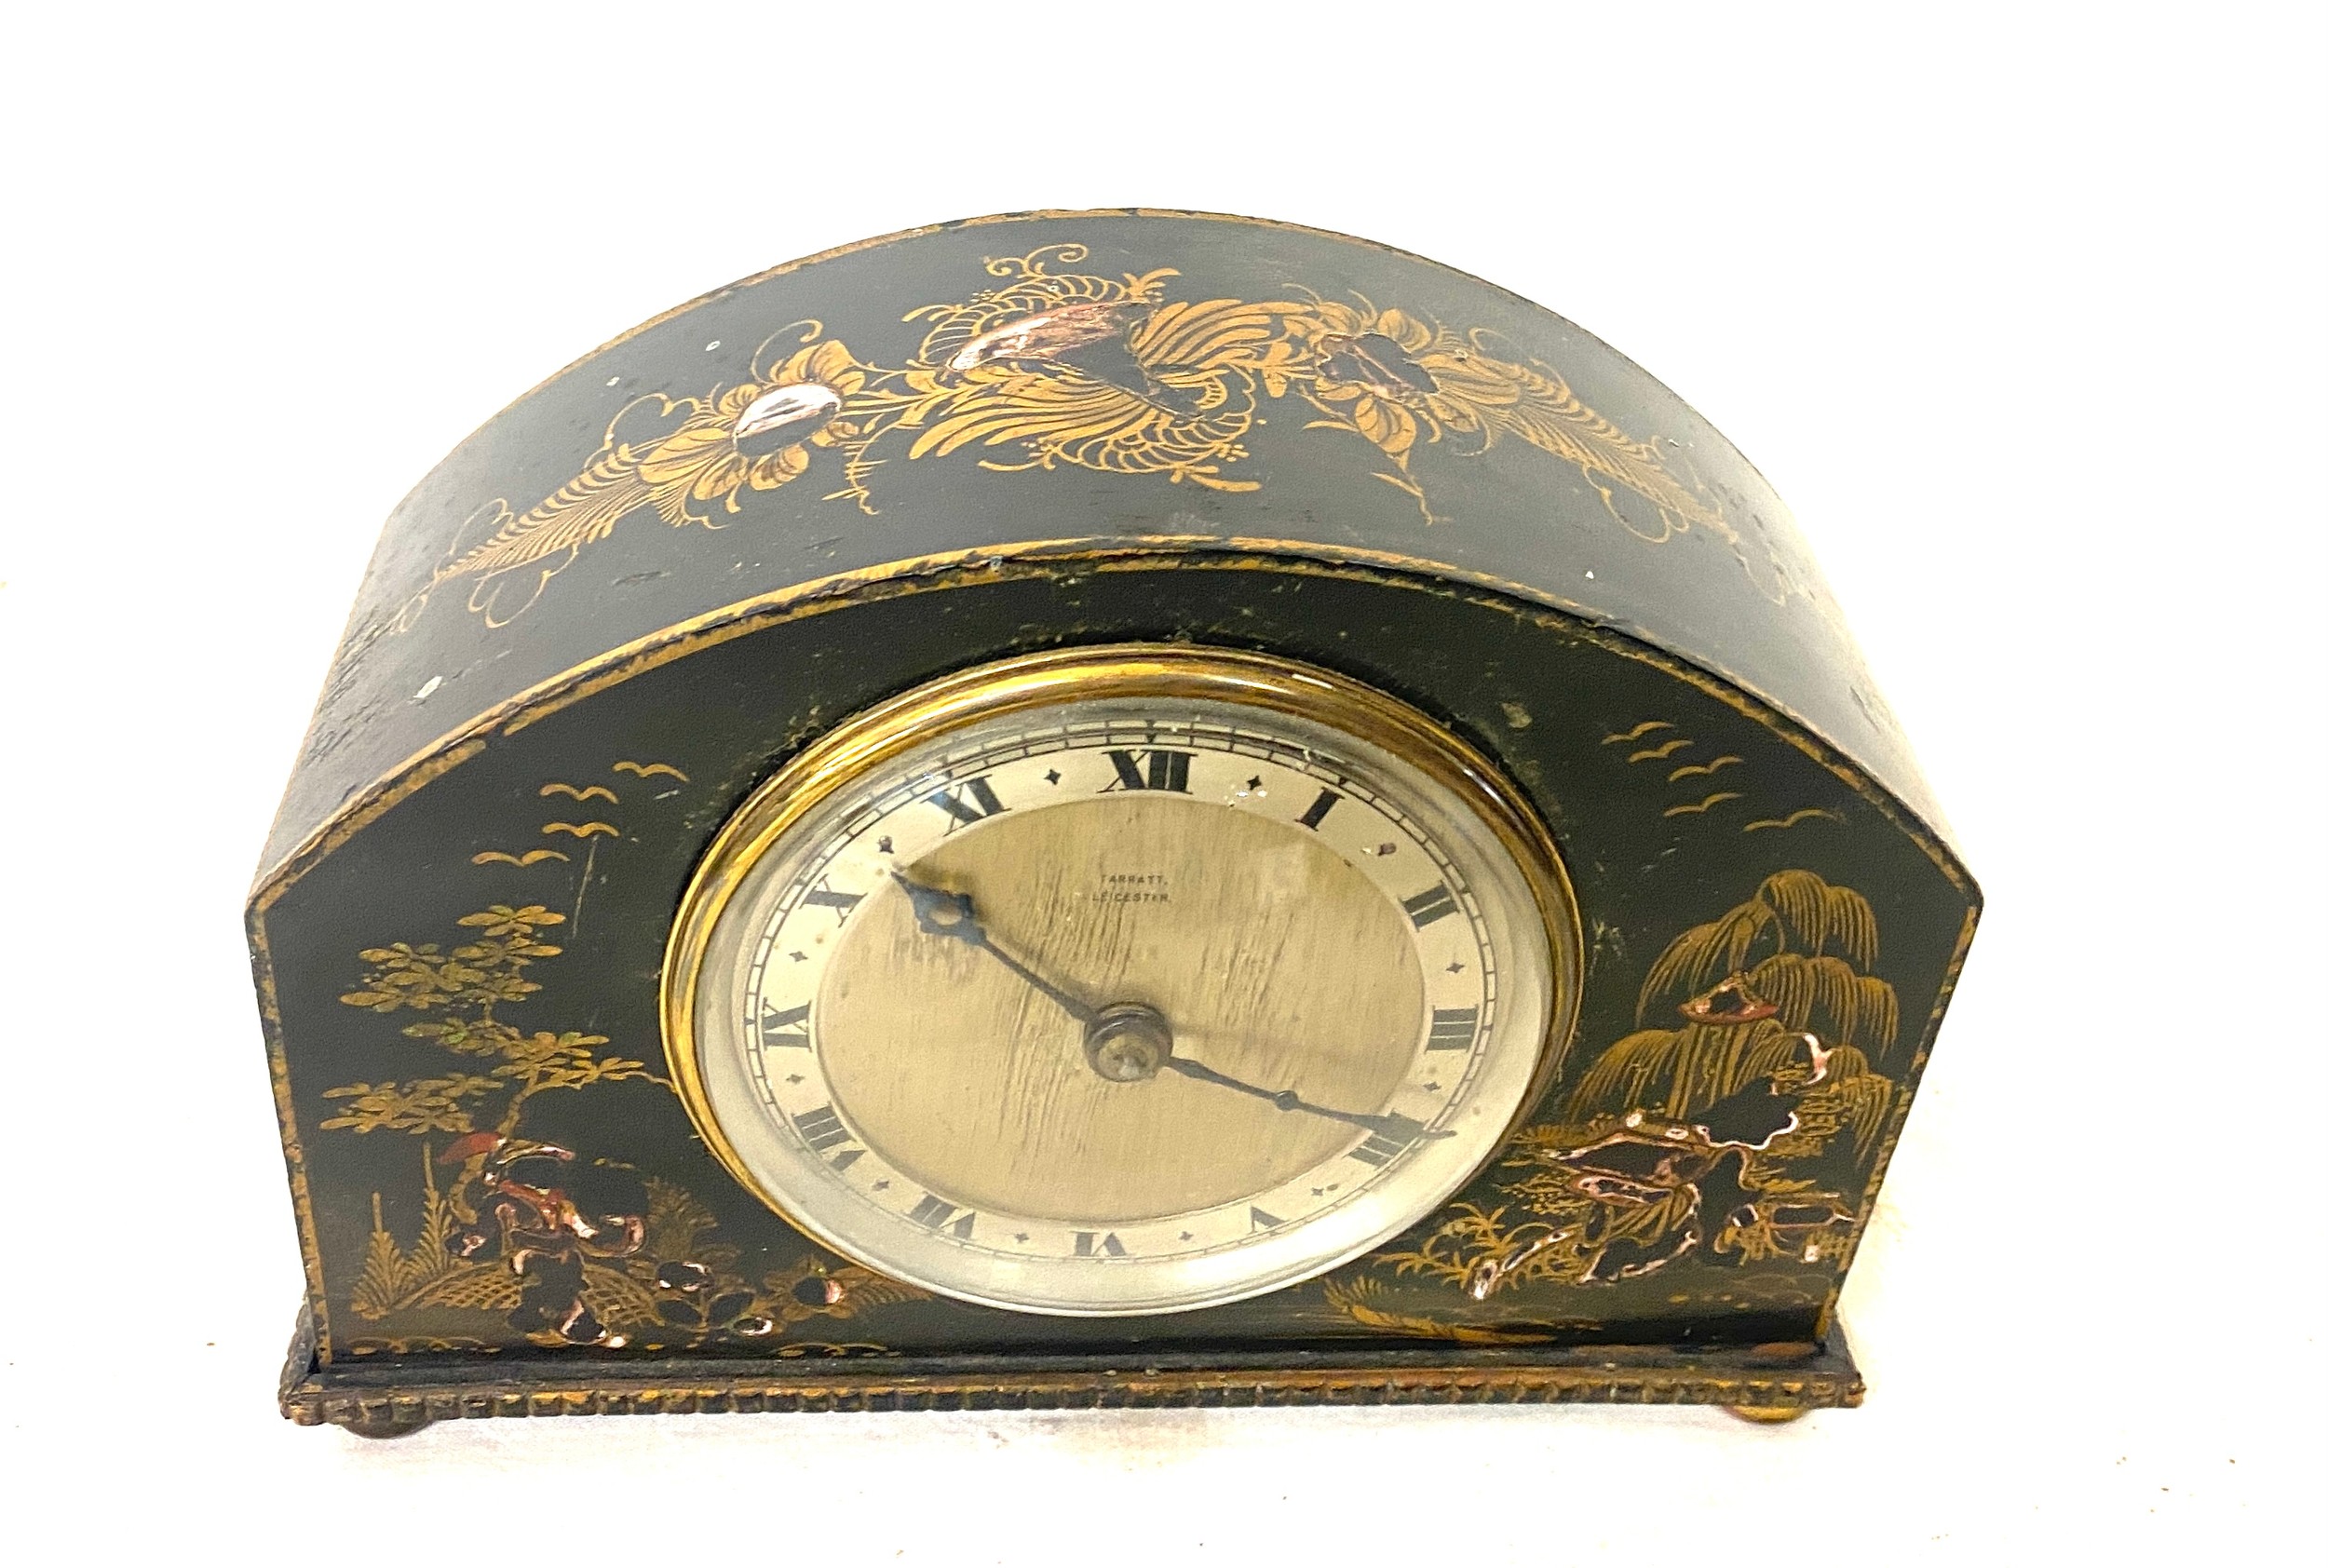 Vintage Tarratt Leicester inlaid mantle clock, untested - Image 4 of 4